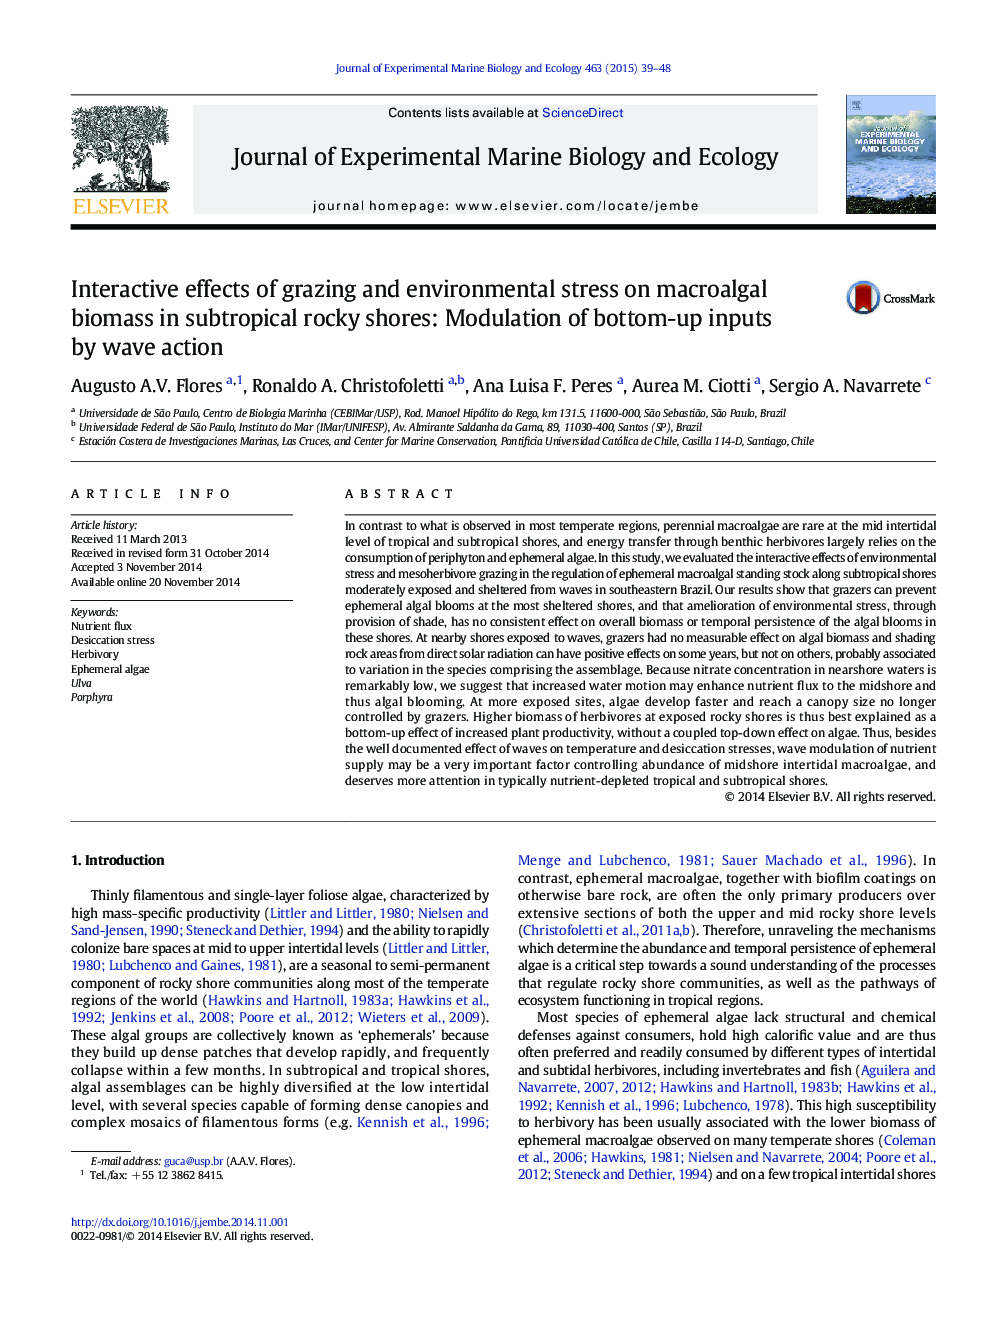 اثرات تعاملی چرا و استرس زیست محیطی بر زیست توده ماکولالالگ در ساحل های سنگی نیمه گرمسیری: مدولاسیون ورودی های پایین به بالا توسط موج عمل 